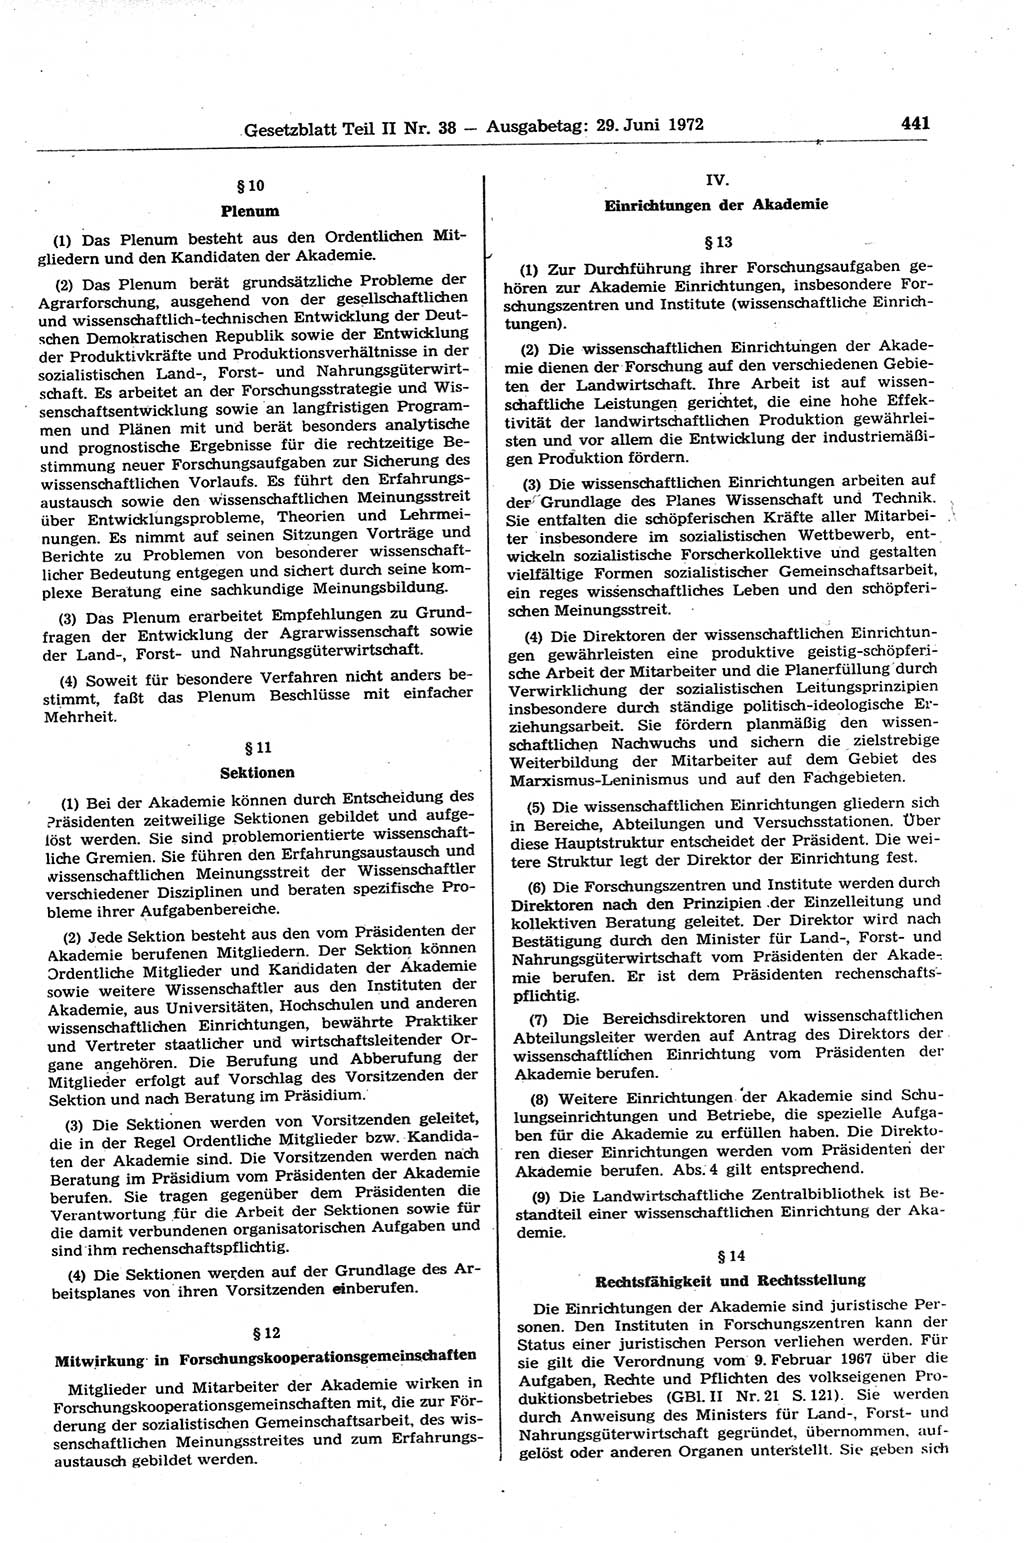 Gesetzblatt (GBl.) der Deutschen Demokratischen Republik (DDR) Teil ⅠⅠ 1972, Seite 441 (GBl. DDR ⅠⅠ 1972, S. 441)